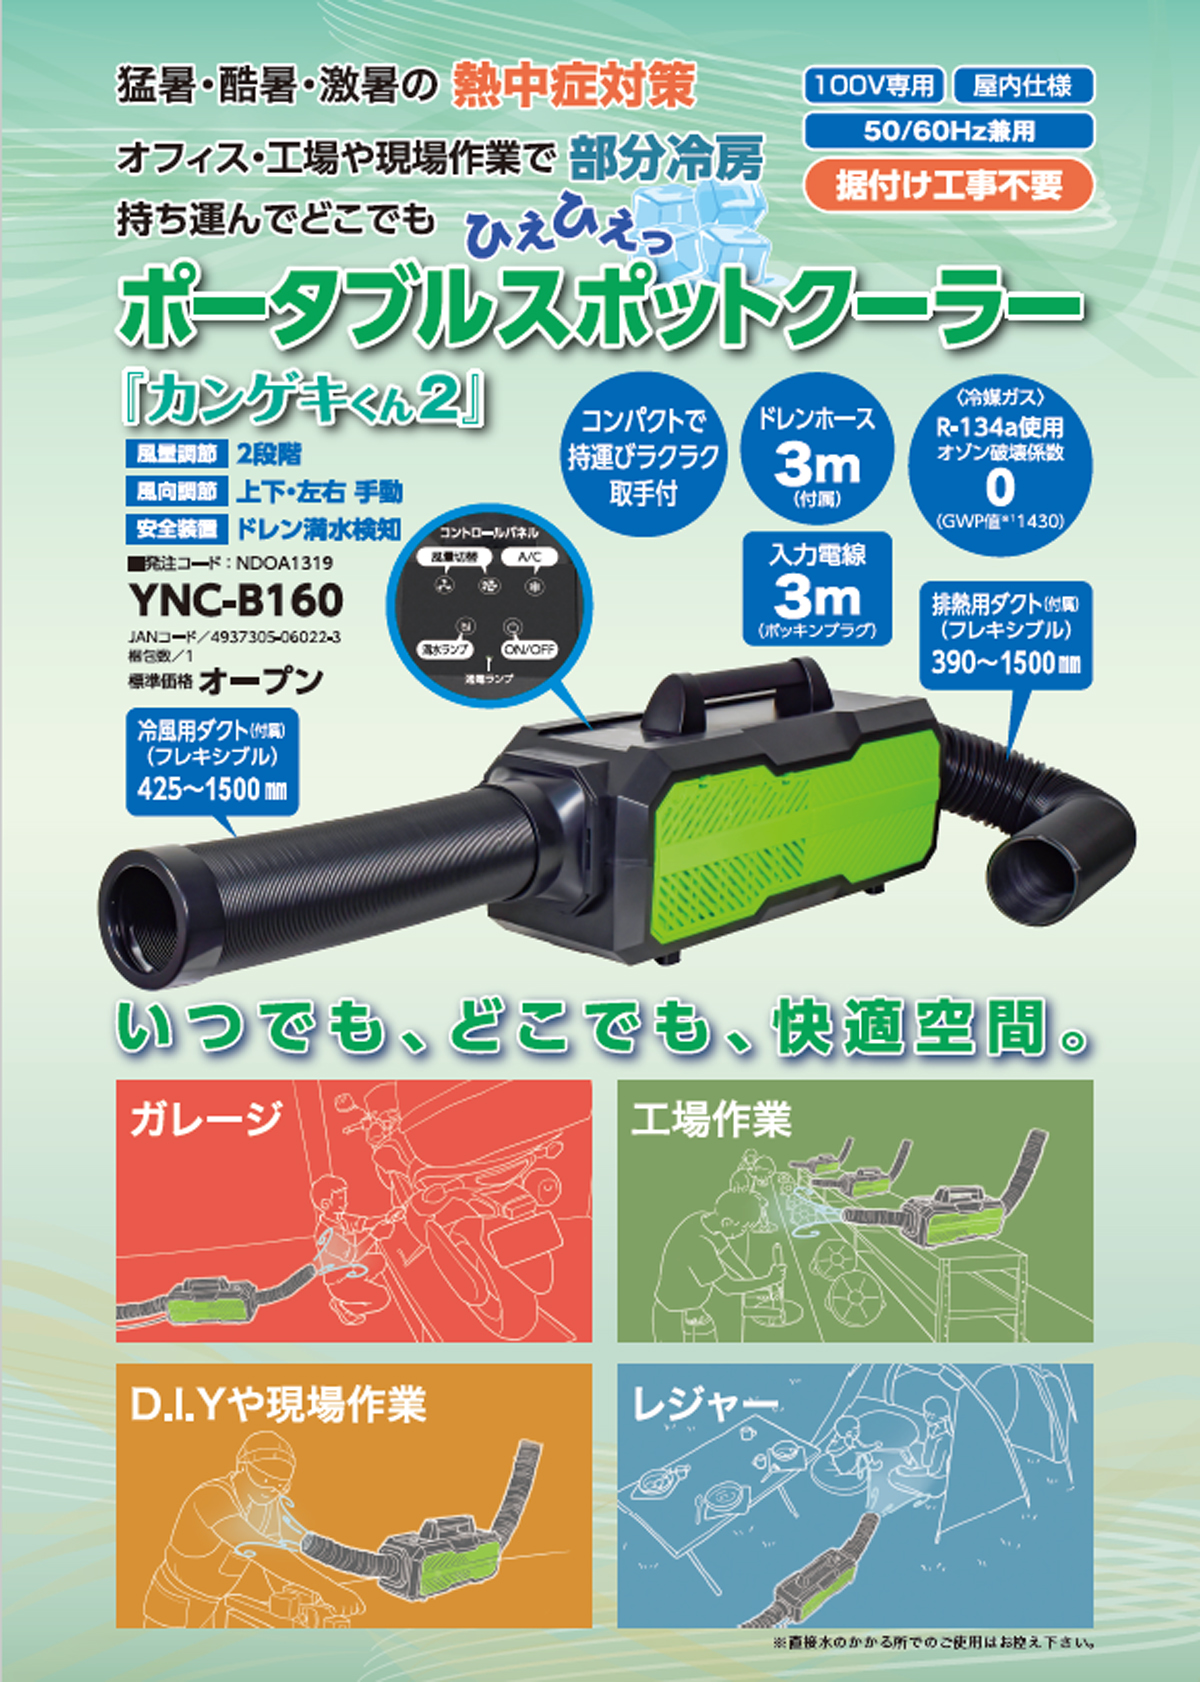 日動 YNC-B160 ポータブルスポットクーラー「カンゲキくん2」 ウエダ金物【公式サイト】